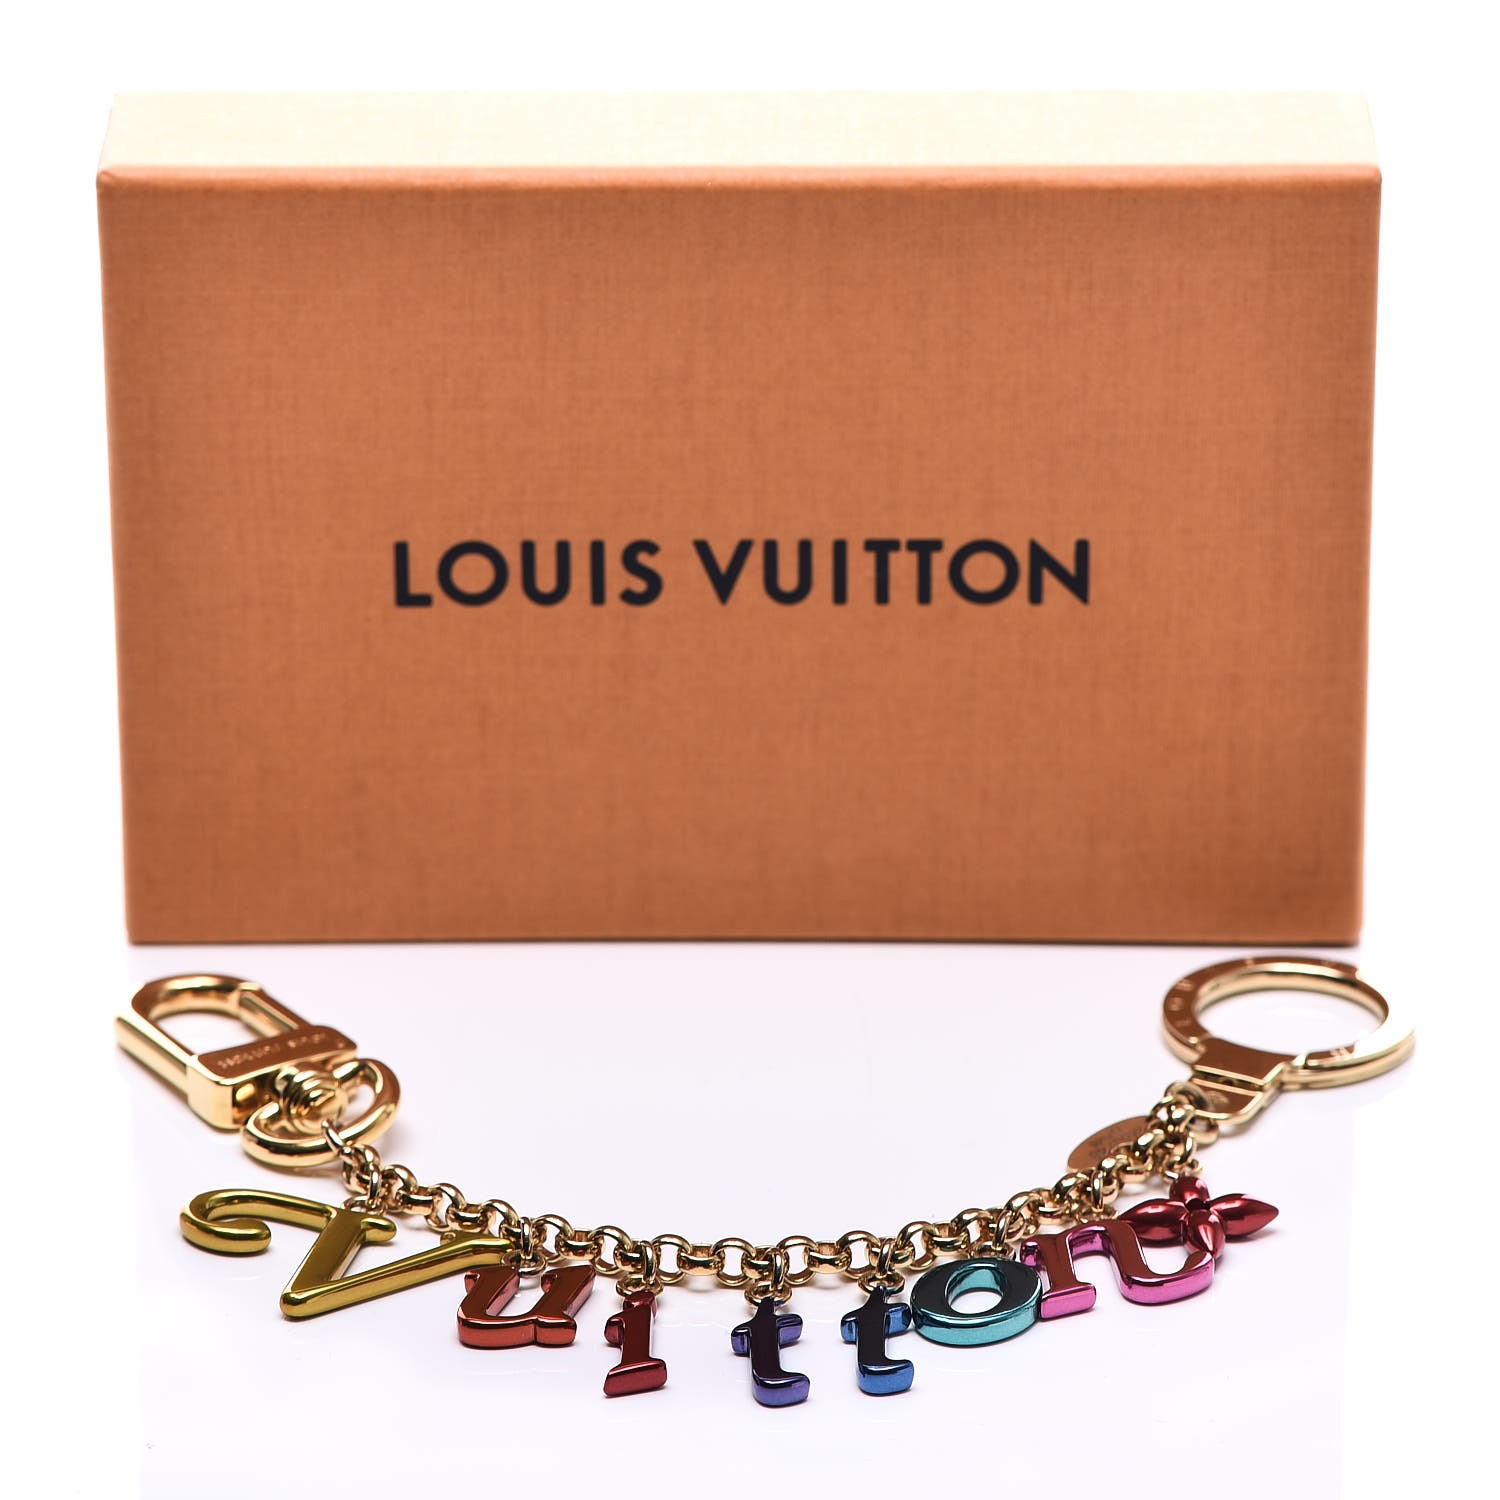 LOUIS VUITTON New Wave Key Chain Bag Charm Multicolor 298450